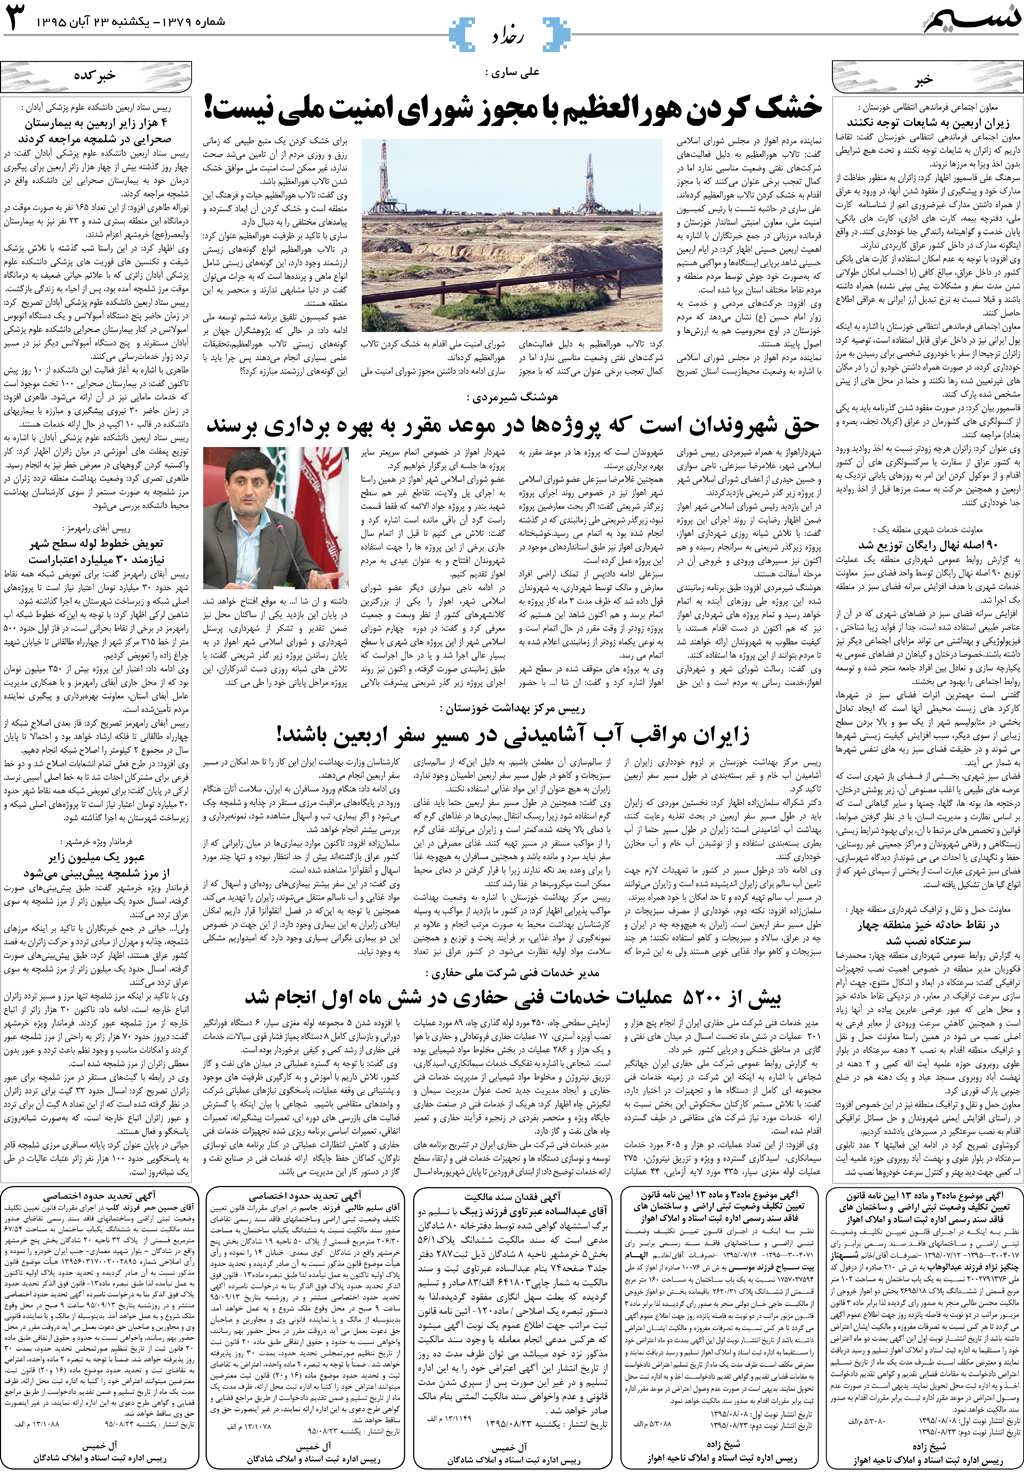 صفحه رخداد روزنامه نسیم شماره 1379